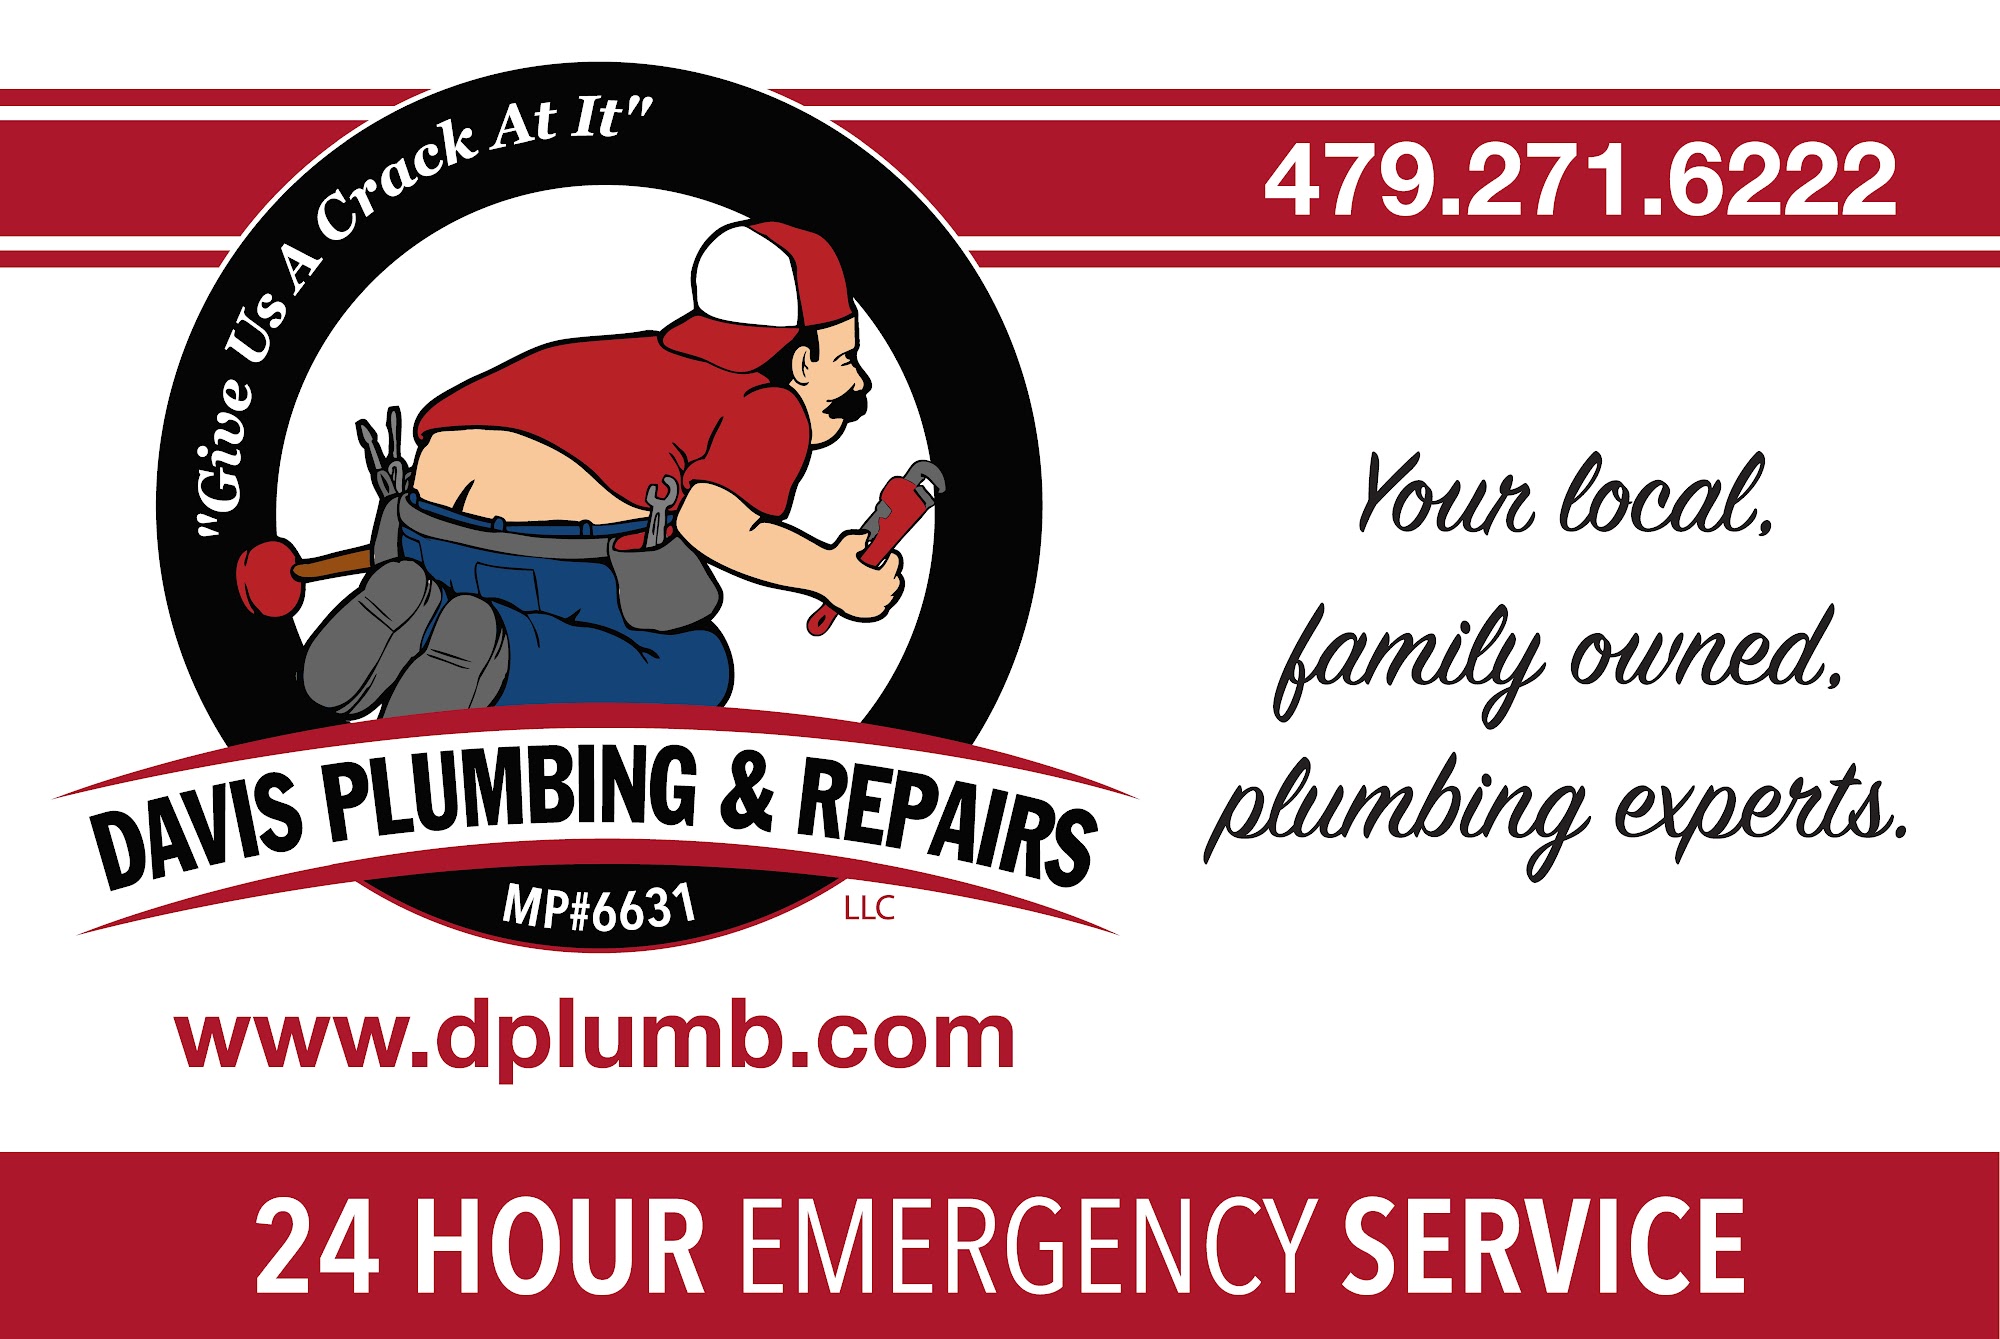 Davis Plumbing & Repairs, LLC